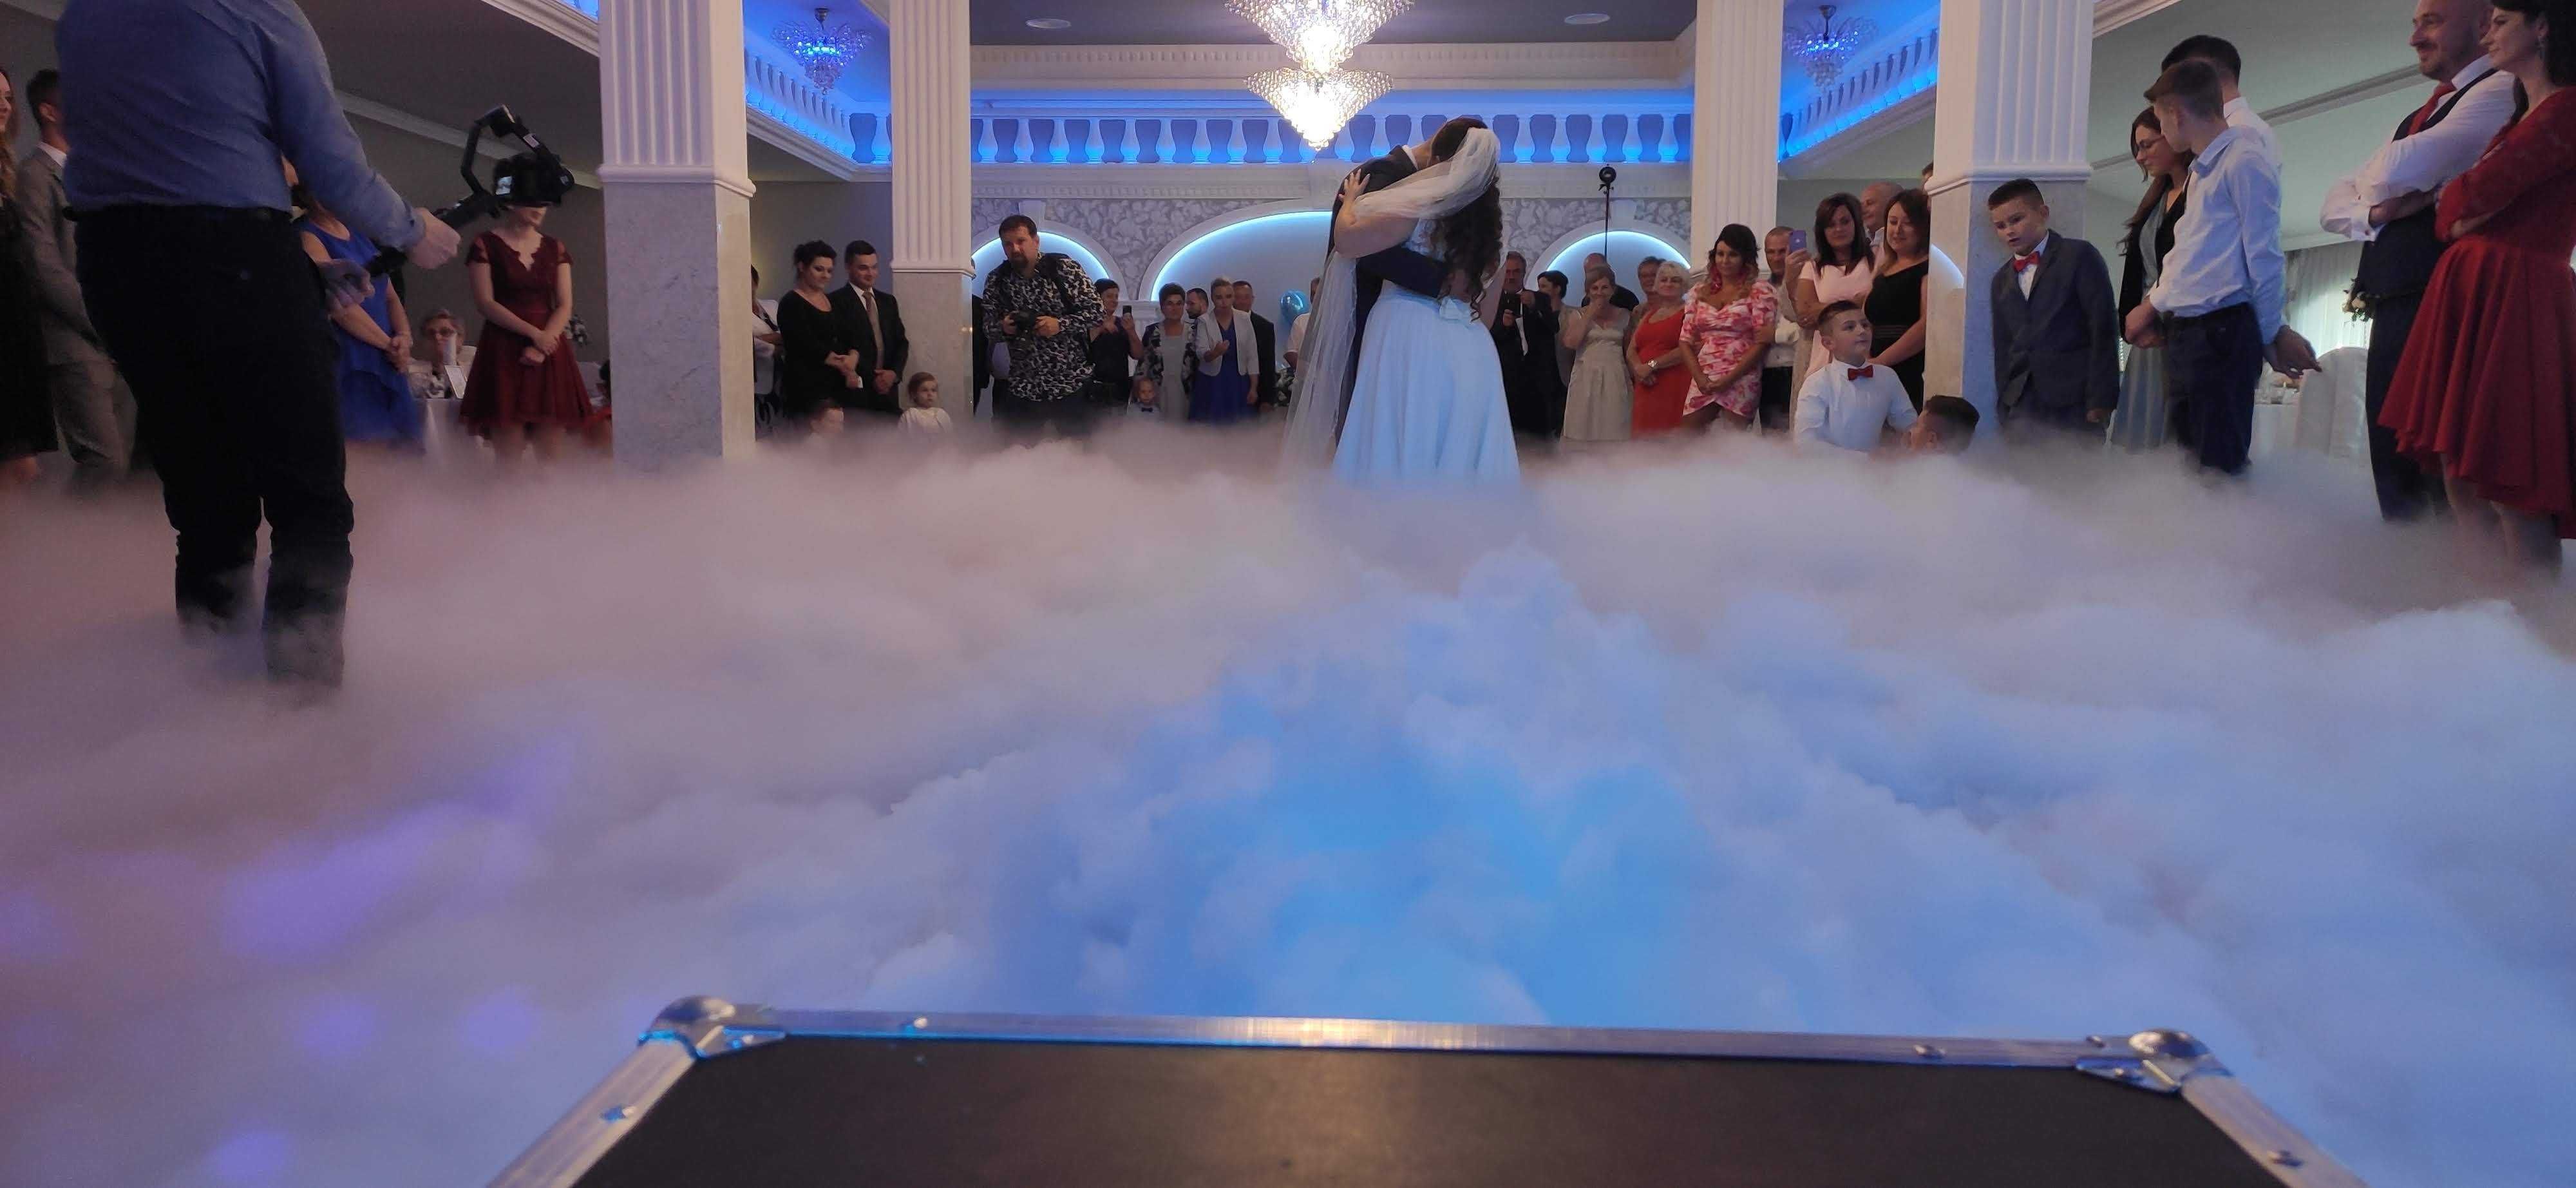 CIężki dym na wesele Wasz Pierwszy taniec w chmurach